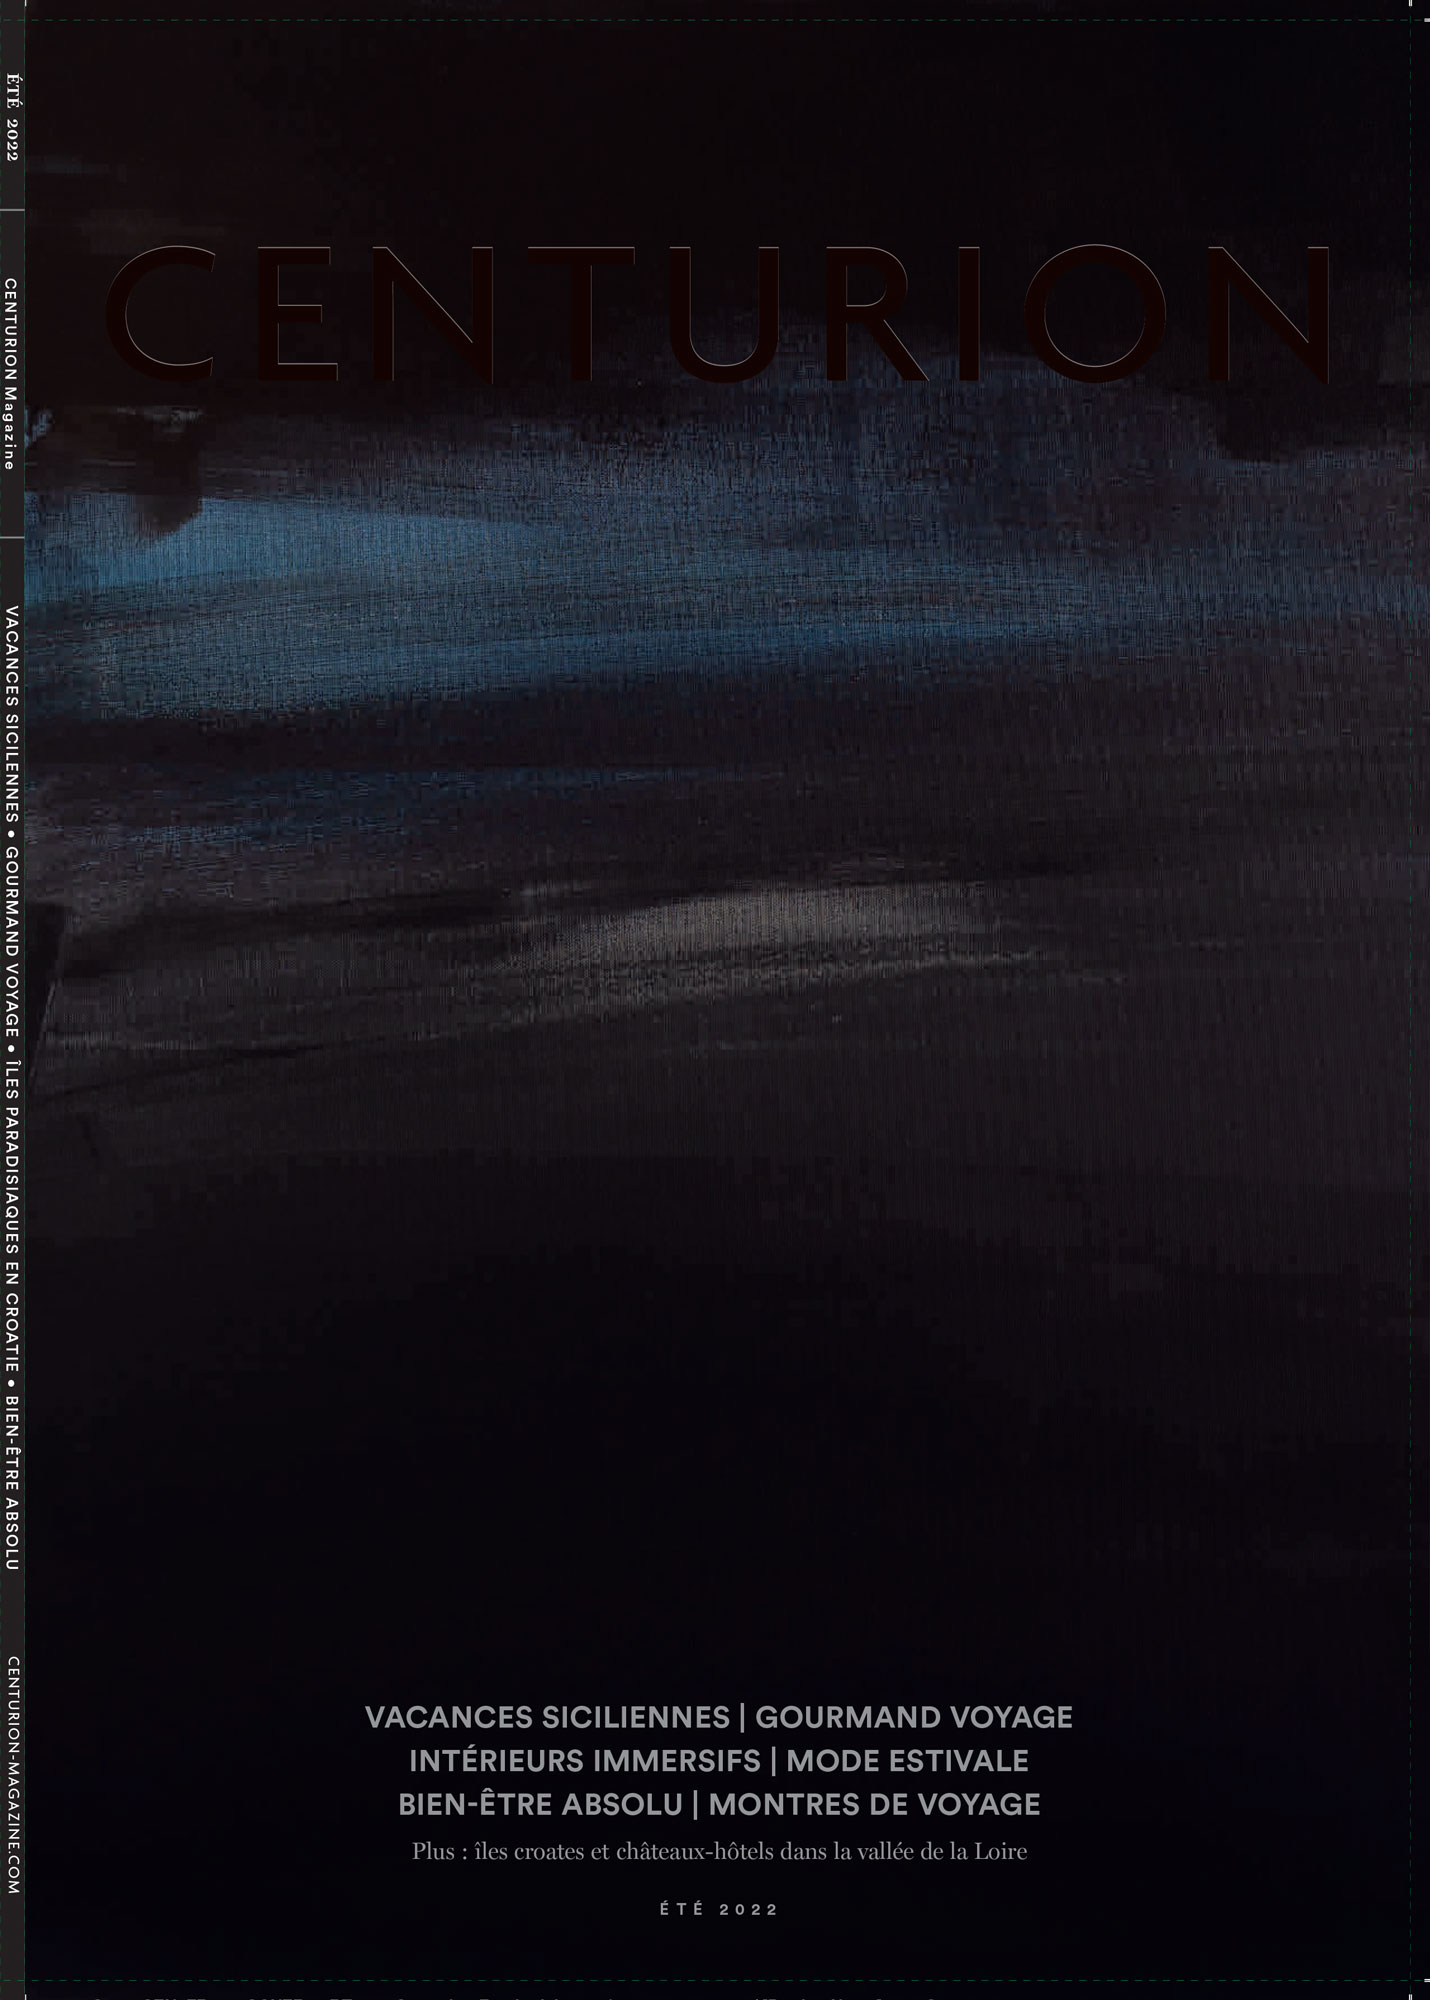 Image de Centurion, magazine d’American Express, traduit et mis en page par Nostromo, agence de communication, pour Journal International Experience